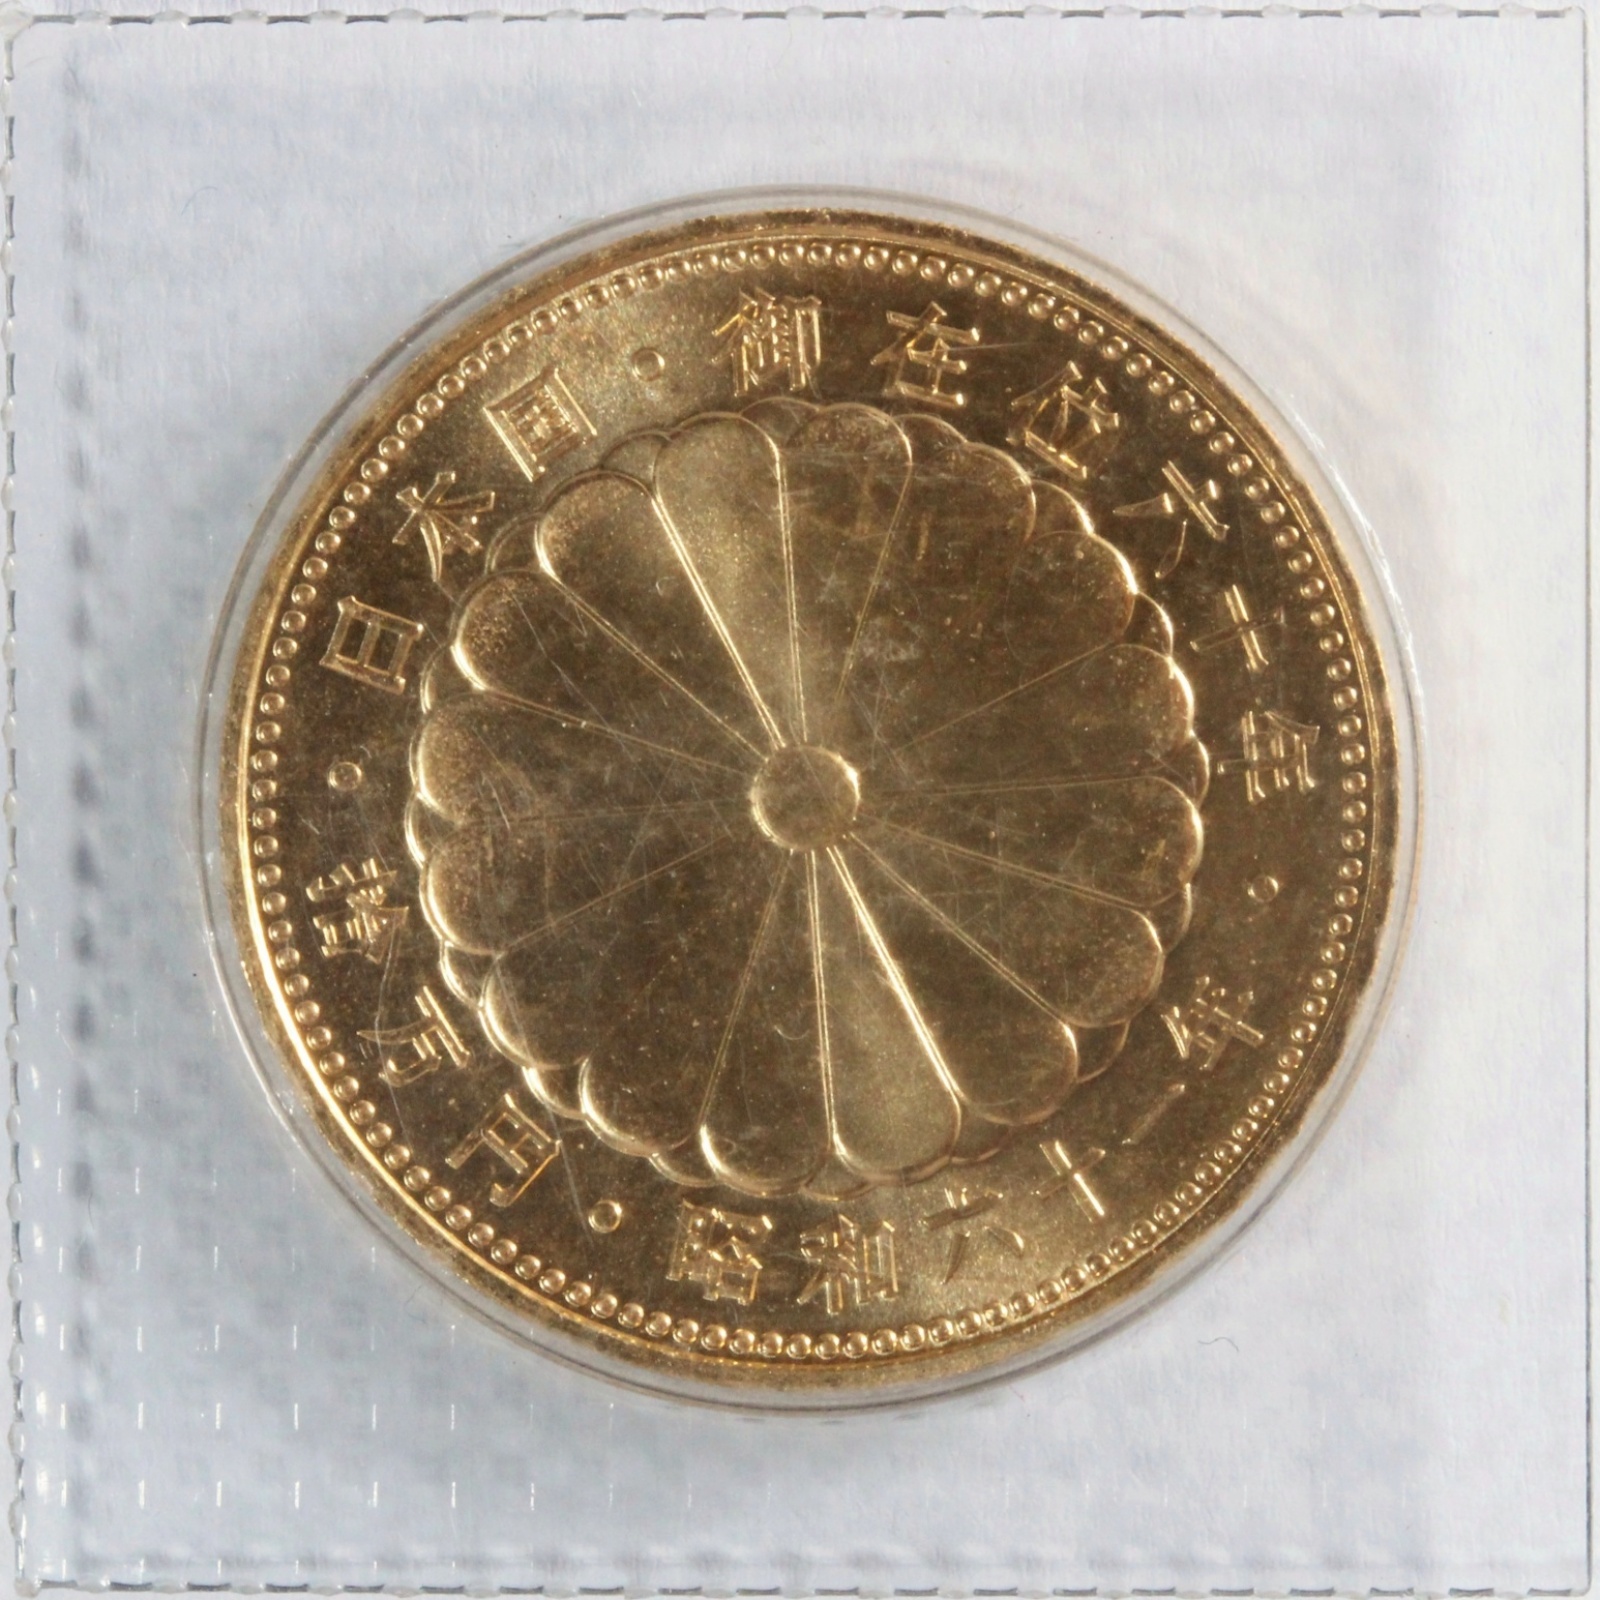 【業界最安値】昭和天皇御在位60年記念10万円金貨 古銭 記念コイン 純金20g 貨幣 | ミスターコインズ